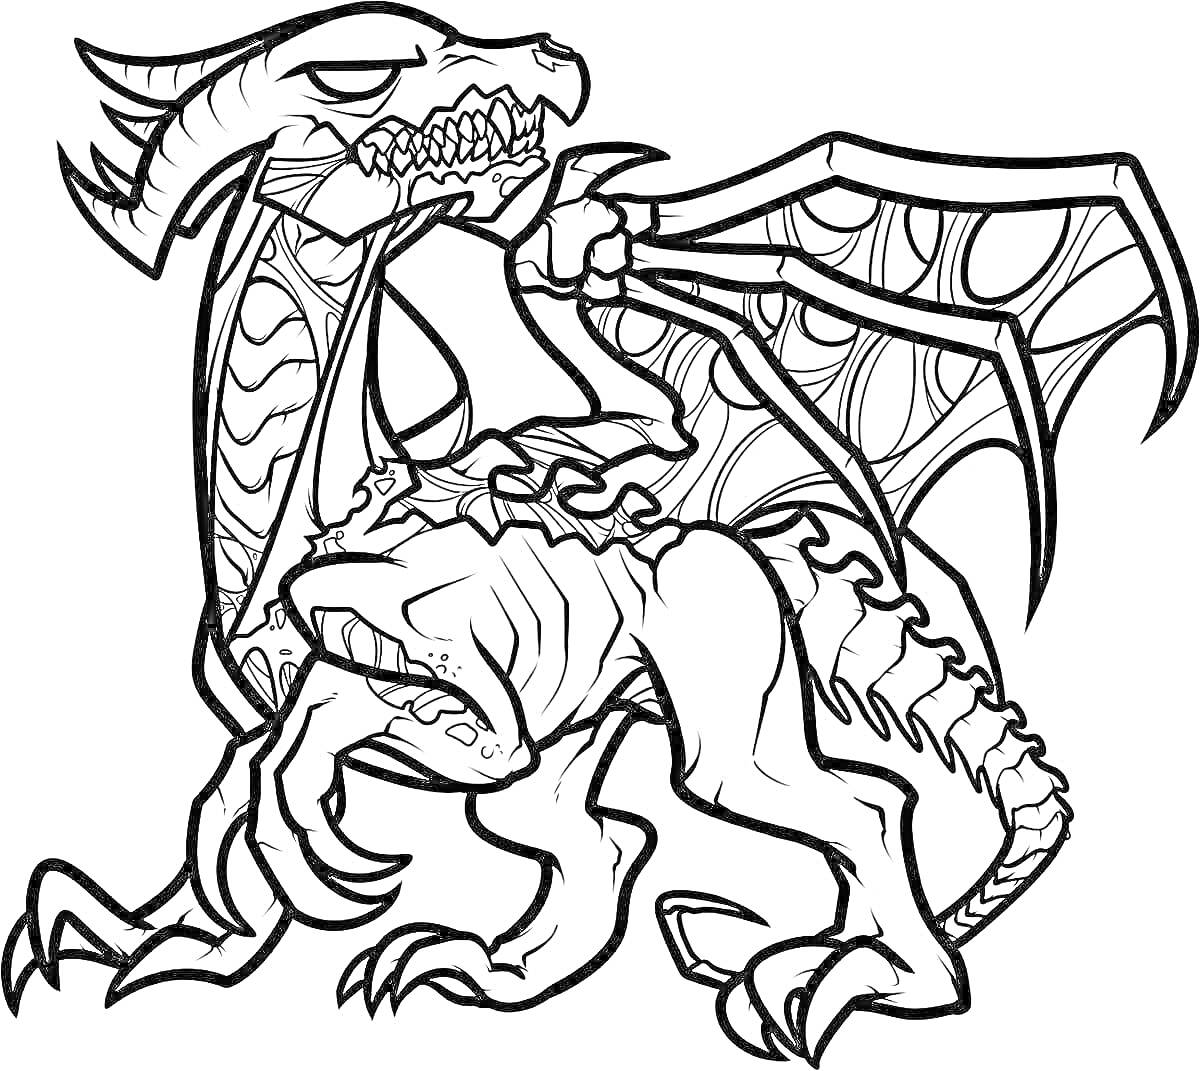 Раскраска Эндер дракон с раскрытыми крыльями и деталями текстуры тела